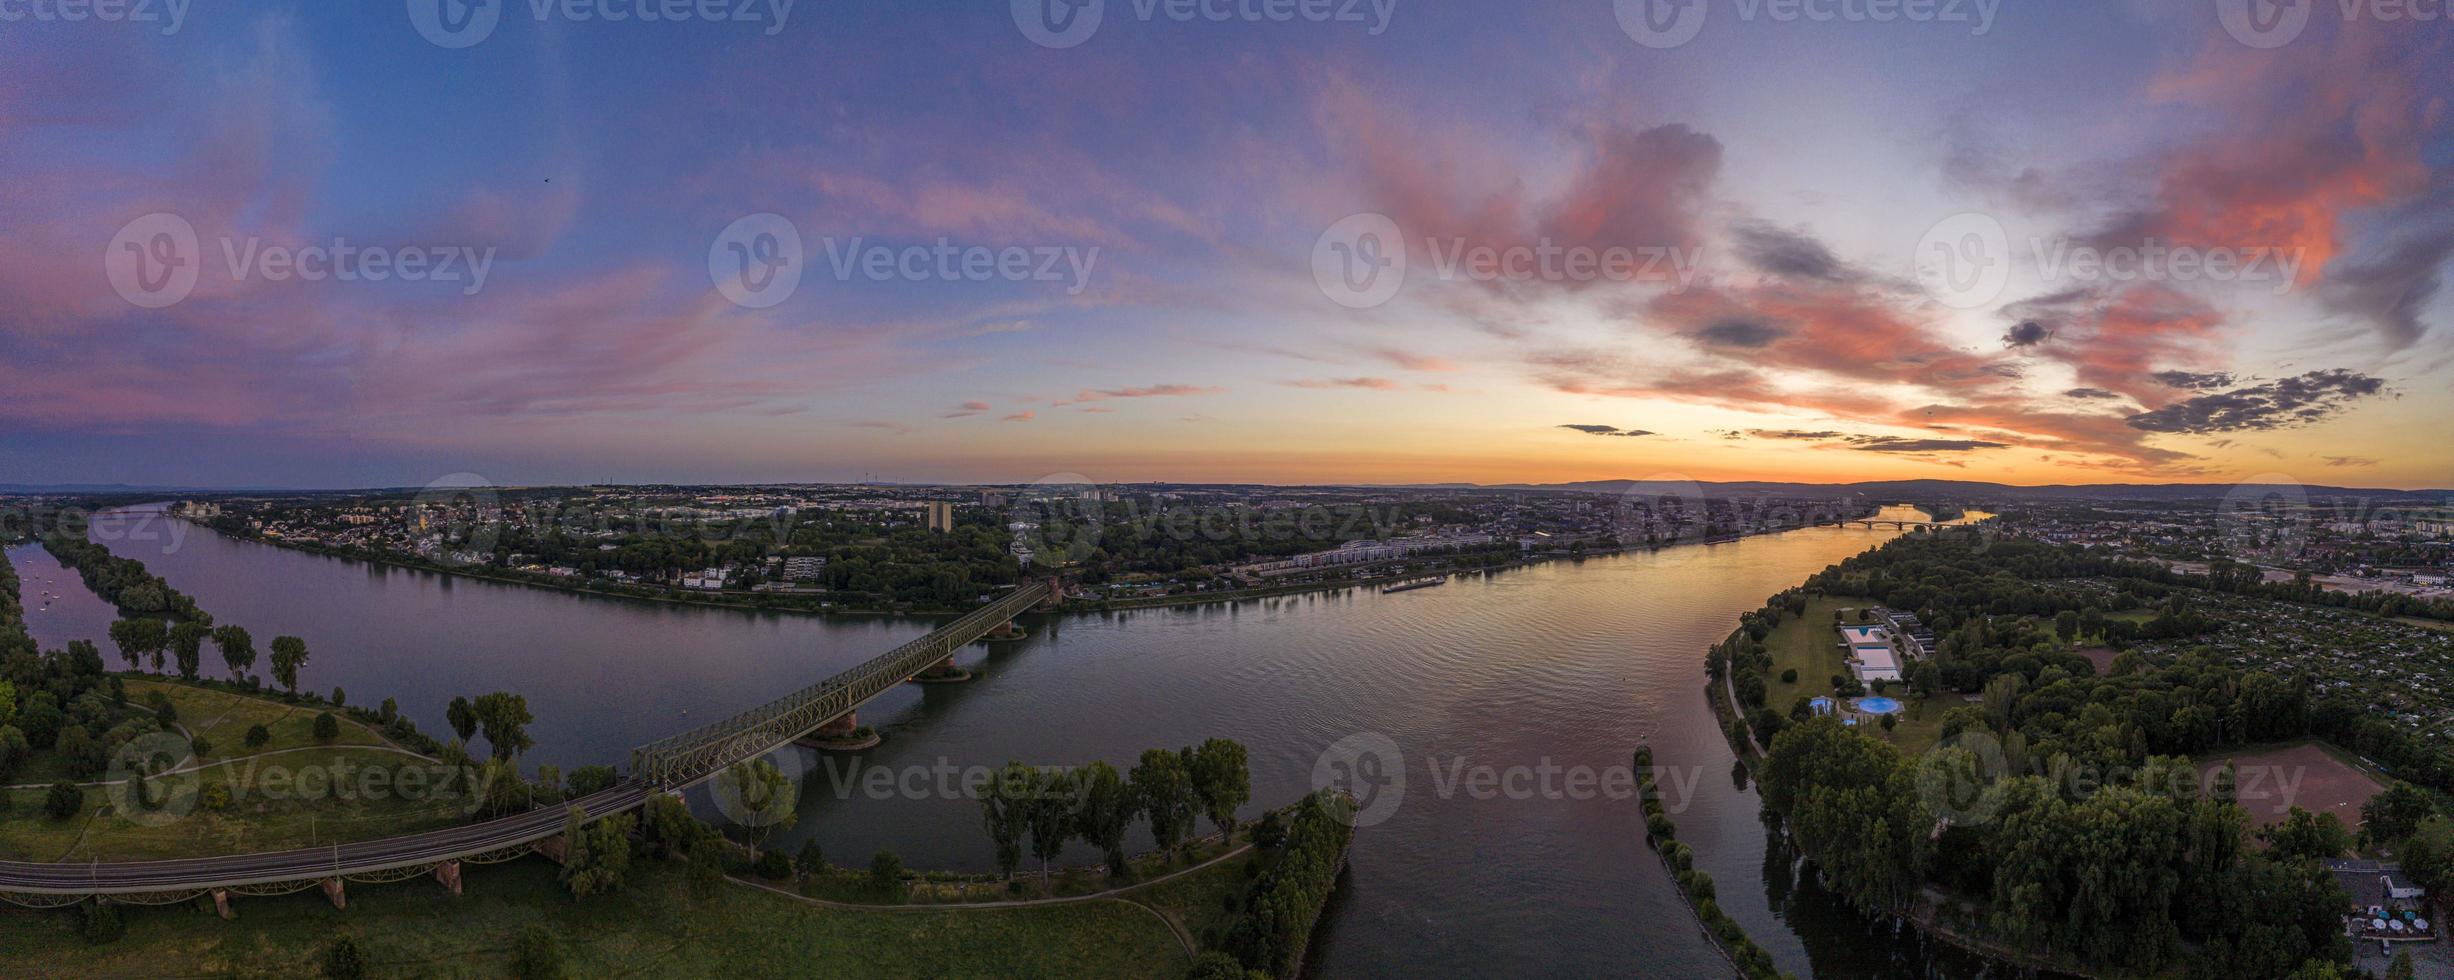 Panorama-Luftbild Mainspitzgebiet mit Mainmündung und Stadt Mainz bei Sonnenuntergang foto